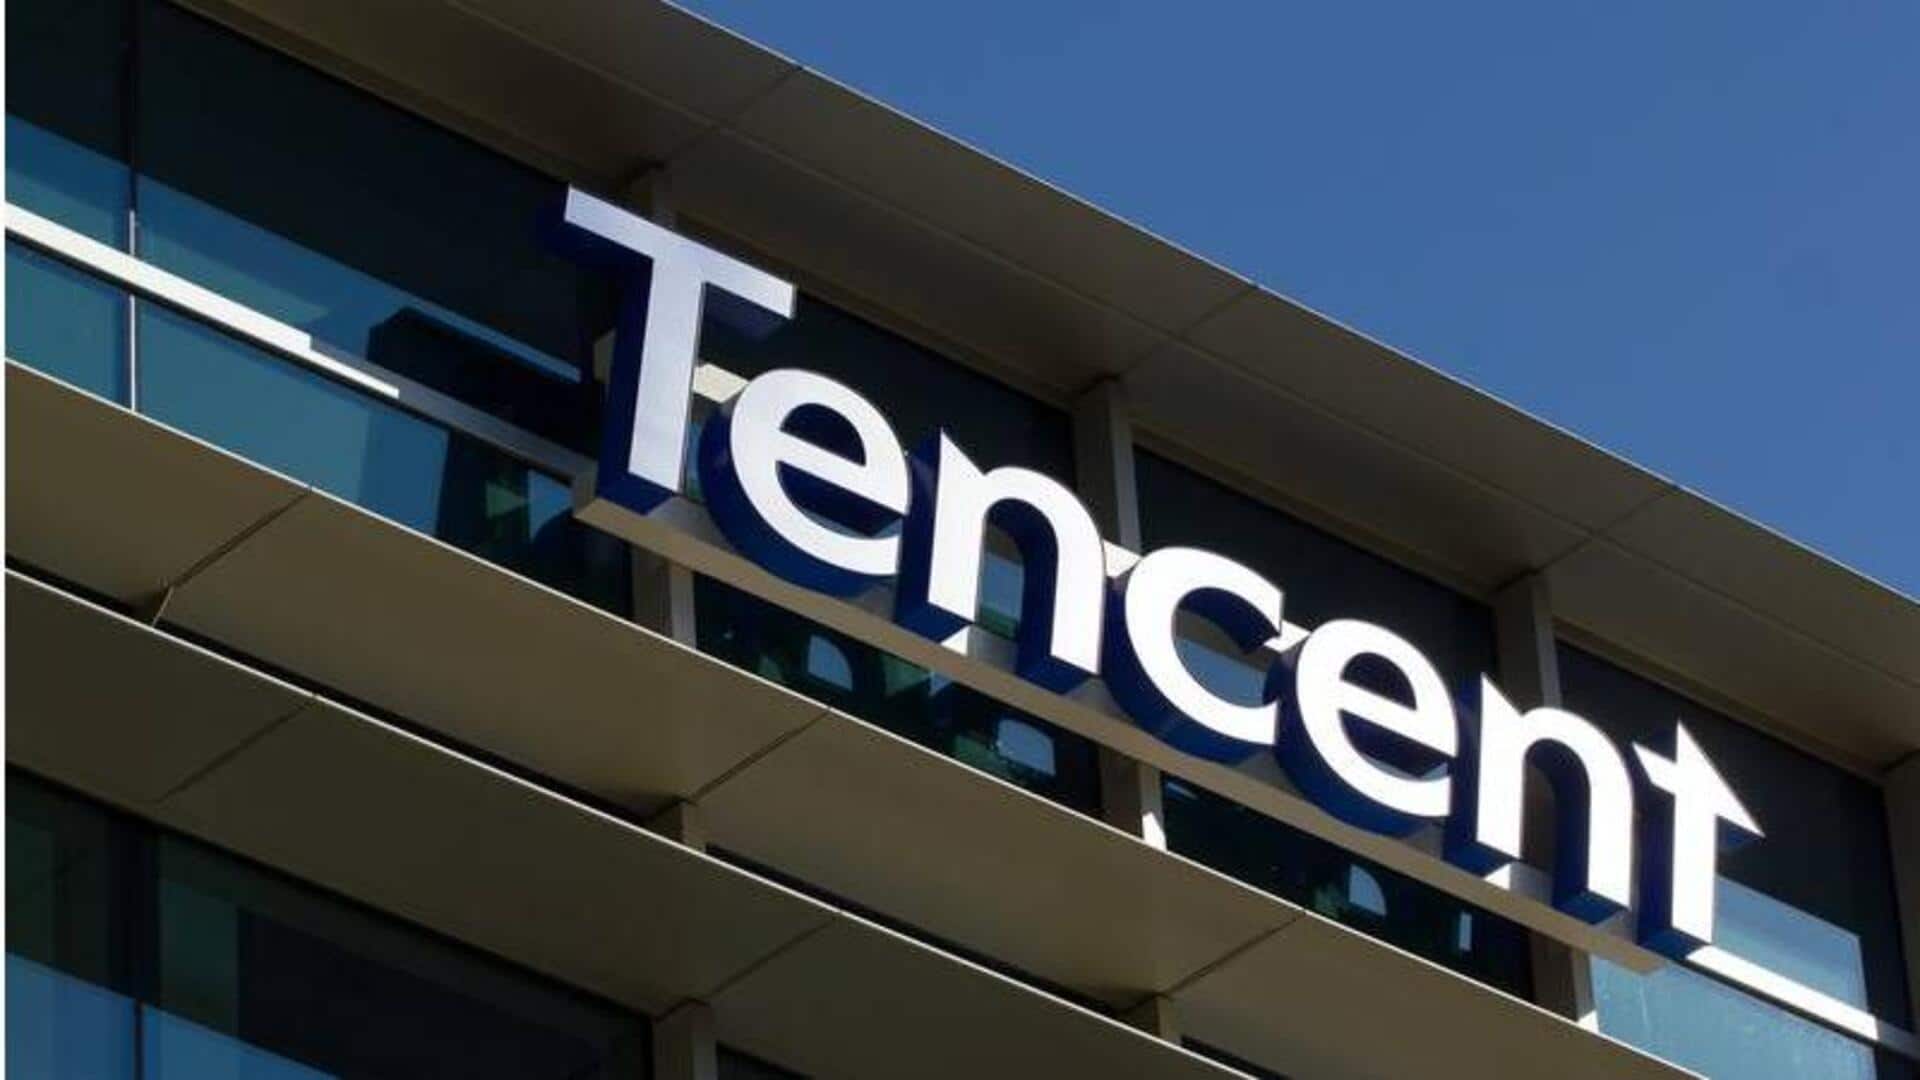 Tencent Q3 revenue climbs 10% as games sales recover